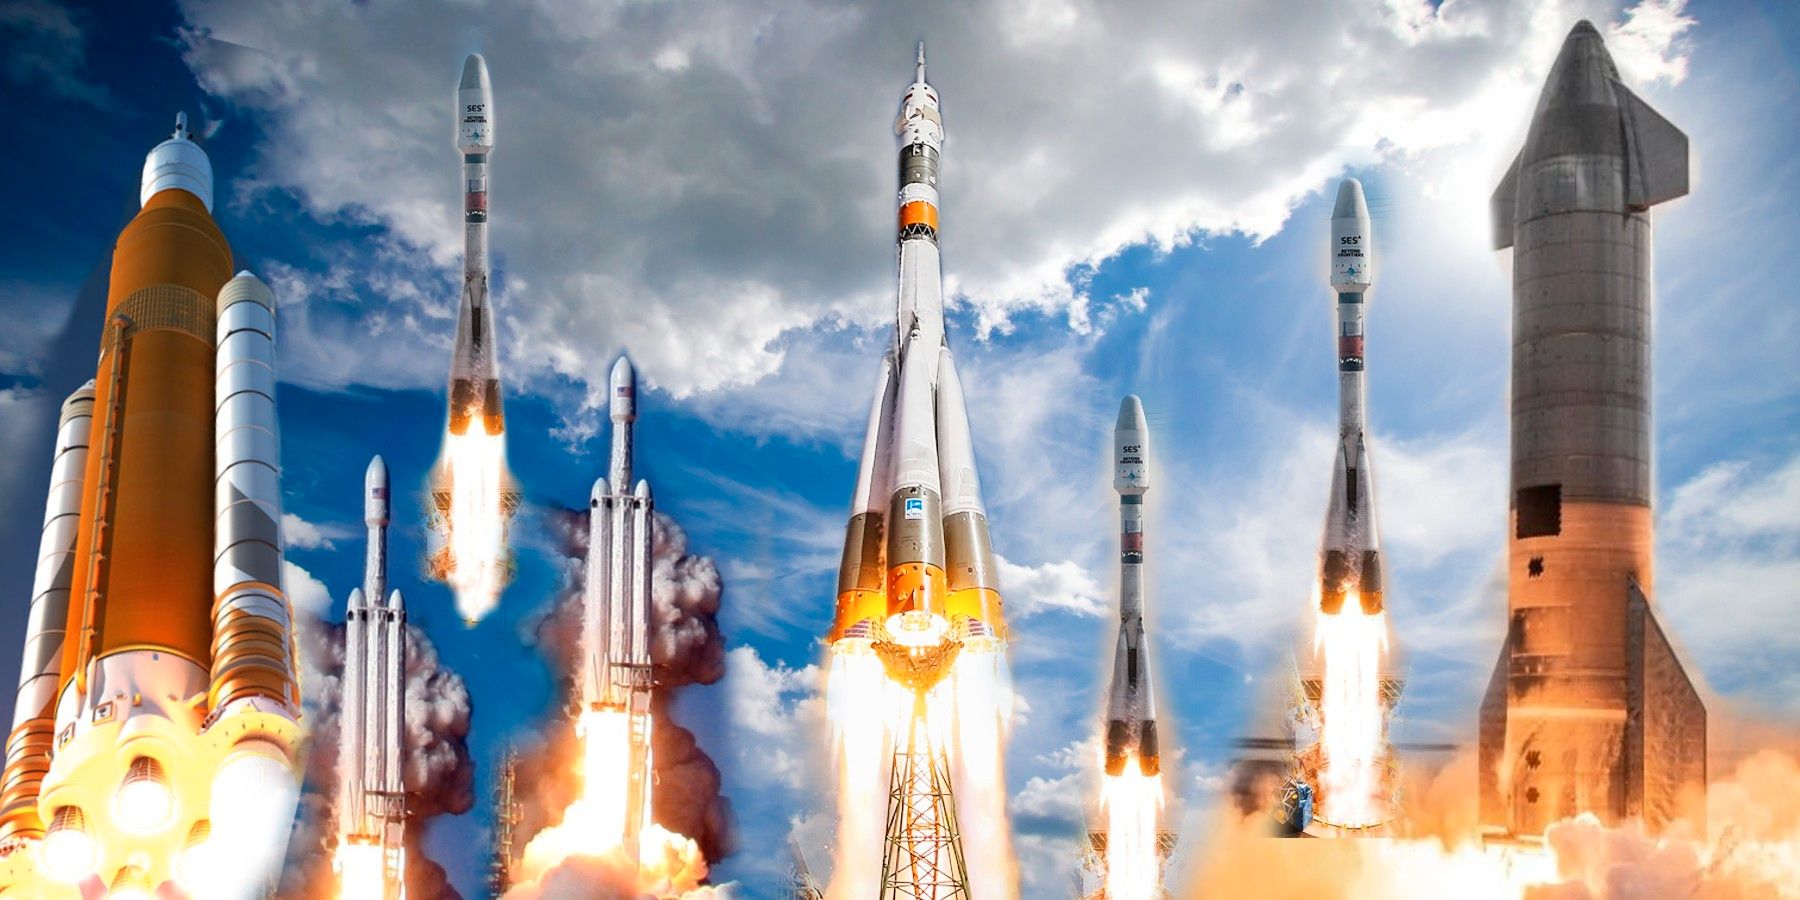 La friolera de 145 cohetes lanzados al espacio en 2021, y 2022 seguirá su ejemplo